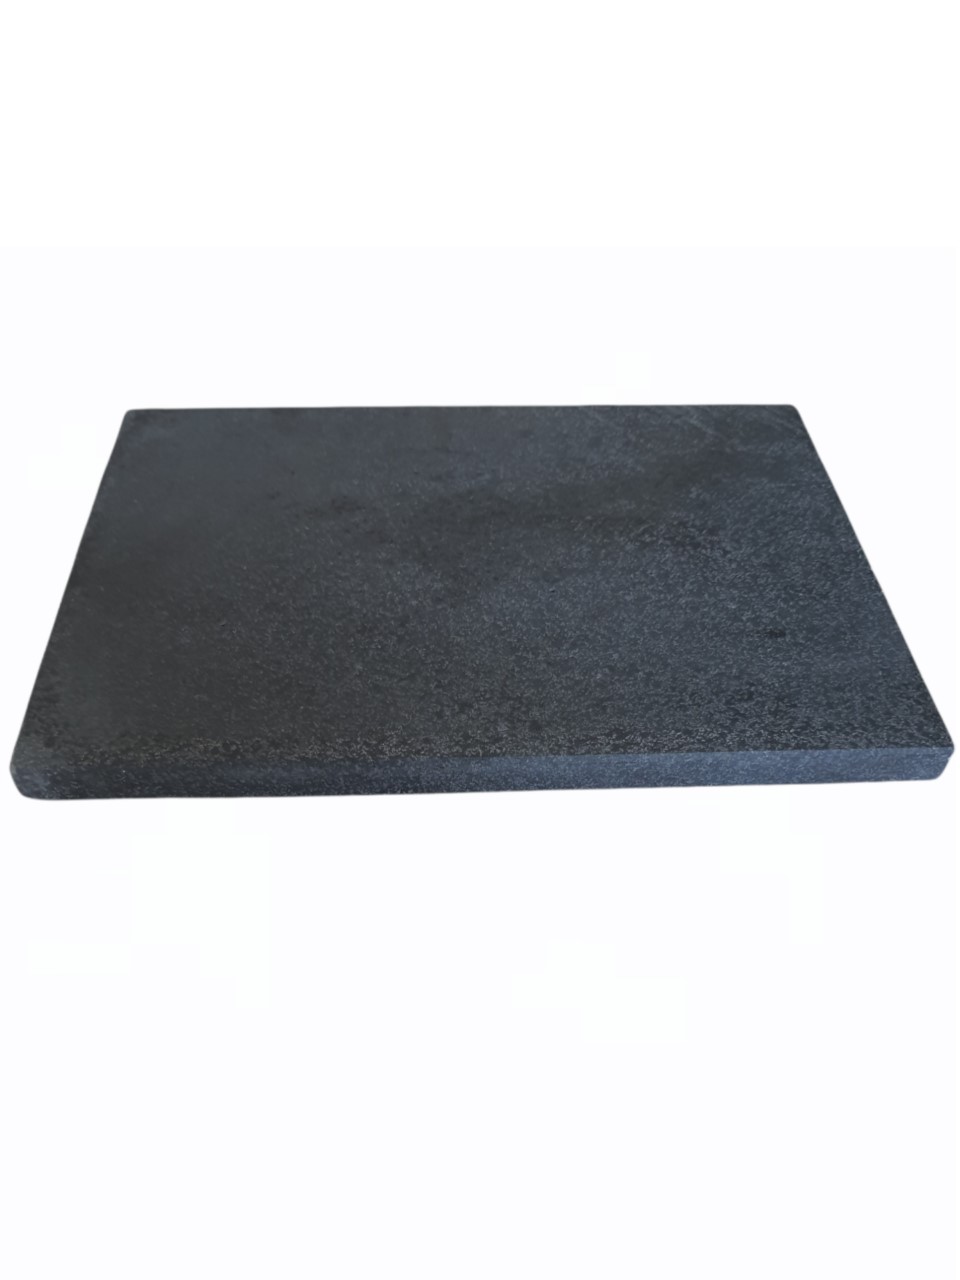 Fırın ve mangal taşı (doğal bazalt taşı) 30cm x 40cm x 2cm